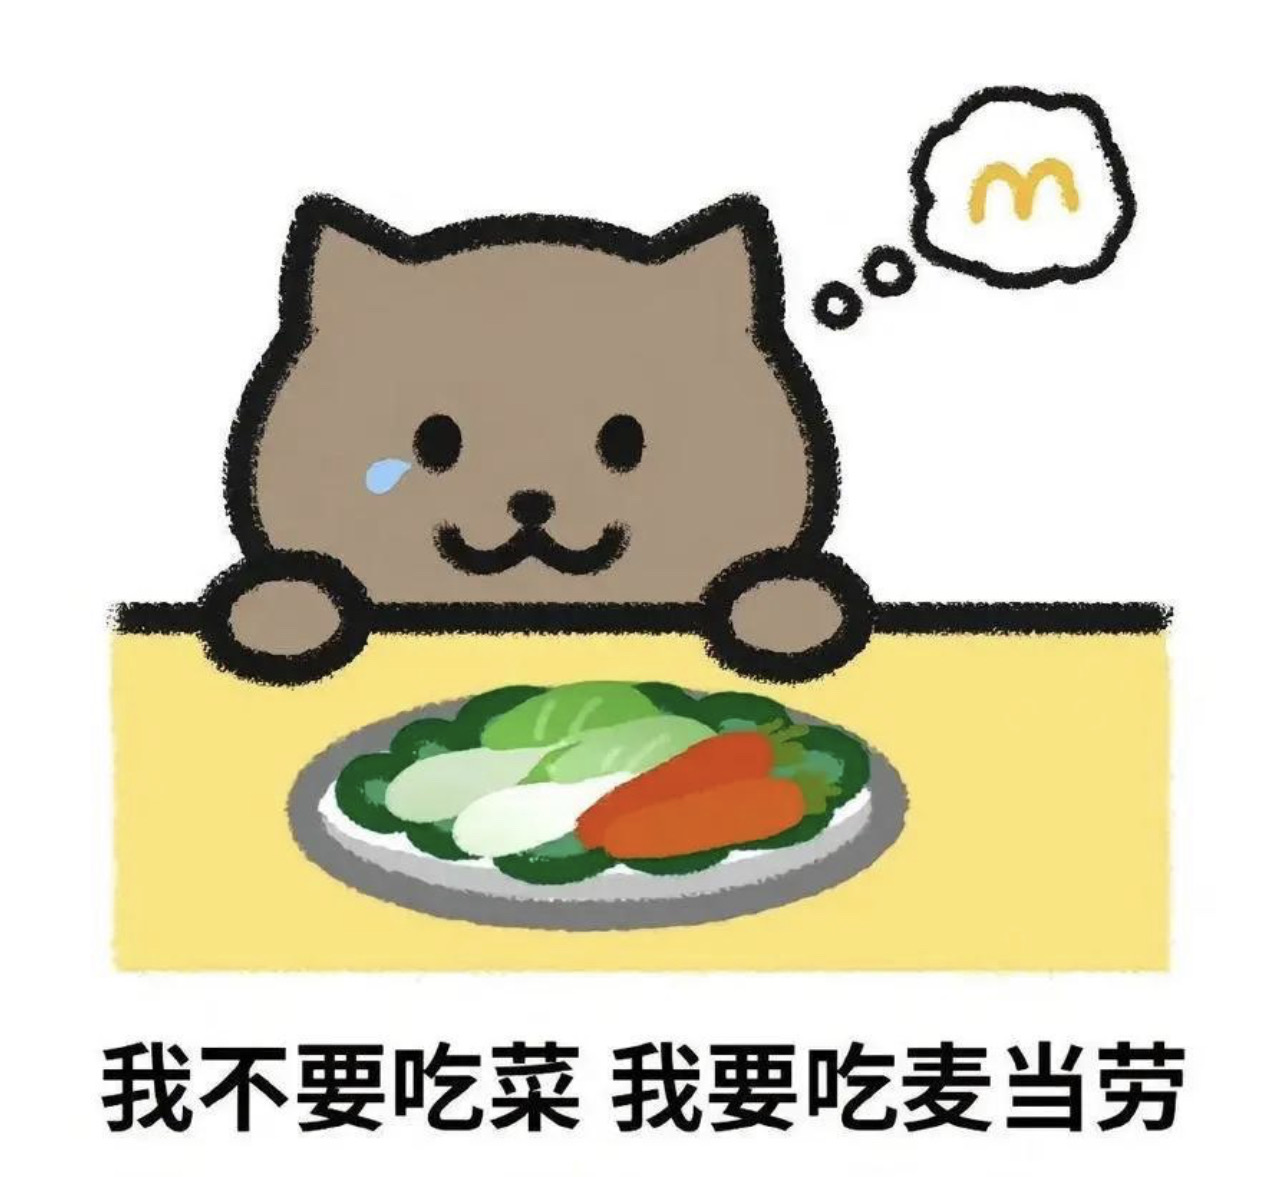 胖貓頭像標註「我不要吃菜 我要吃麥當勞」。圖/取自網路截圖